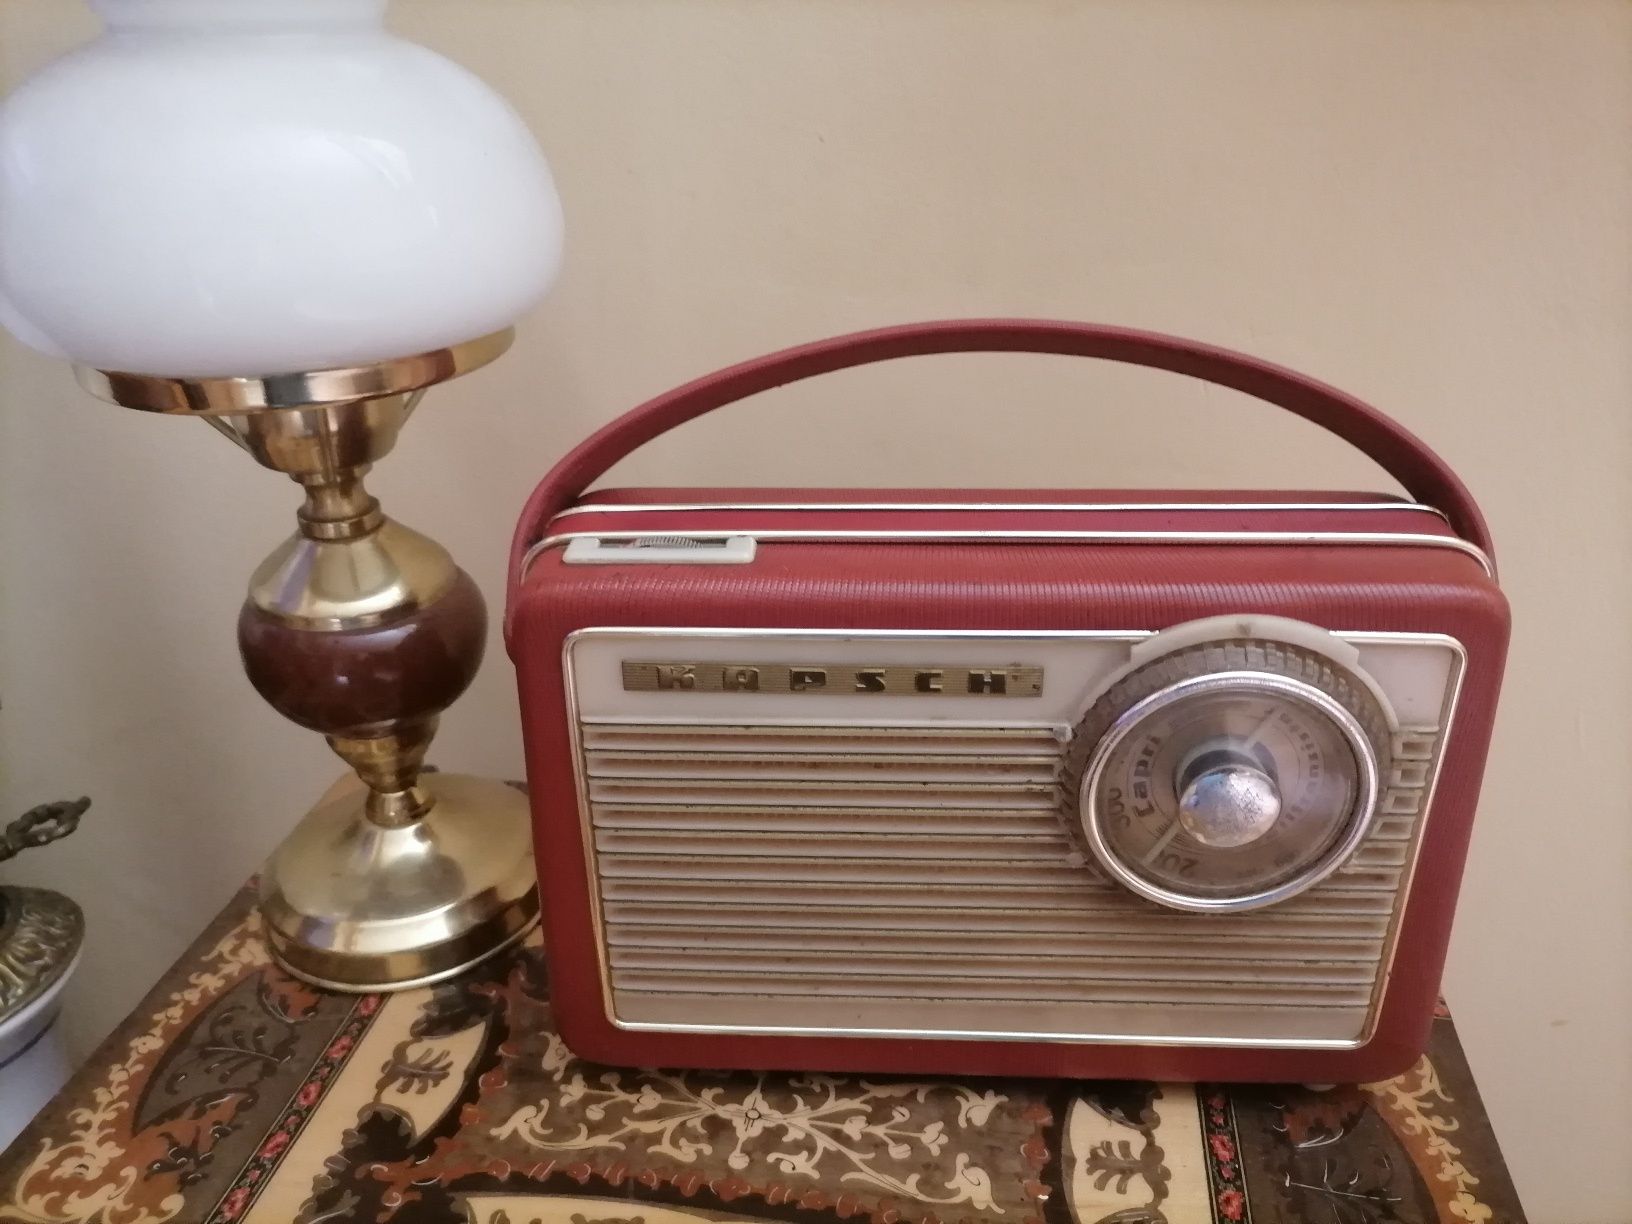 Stare radio tranzystorowe z lat PRLu